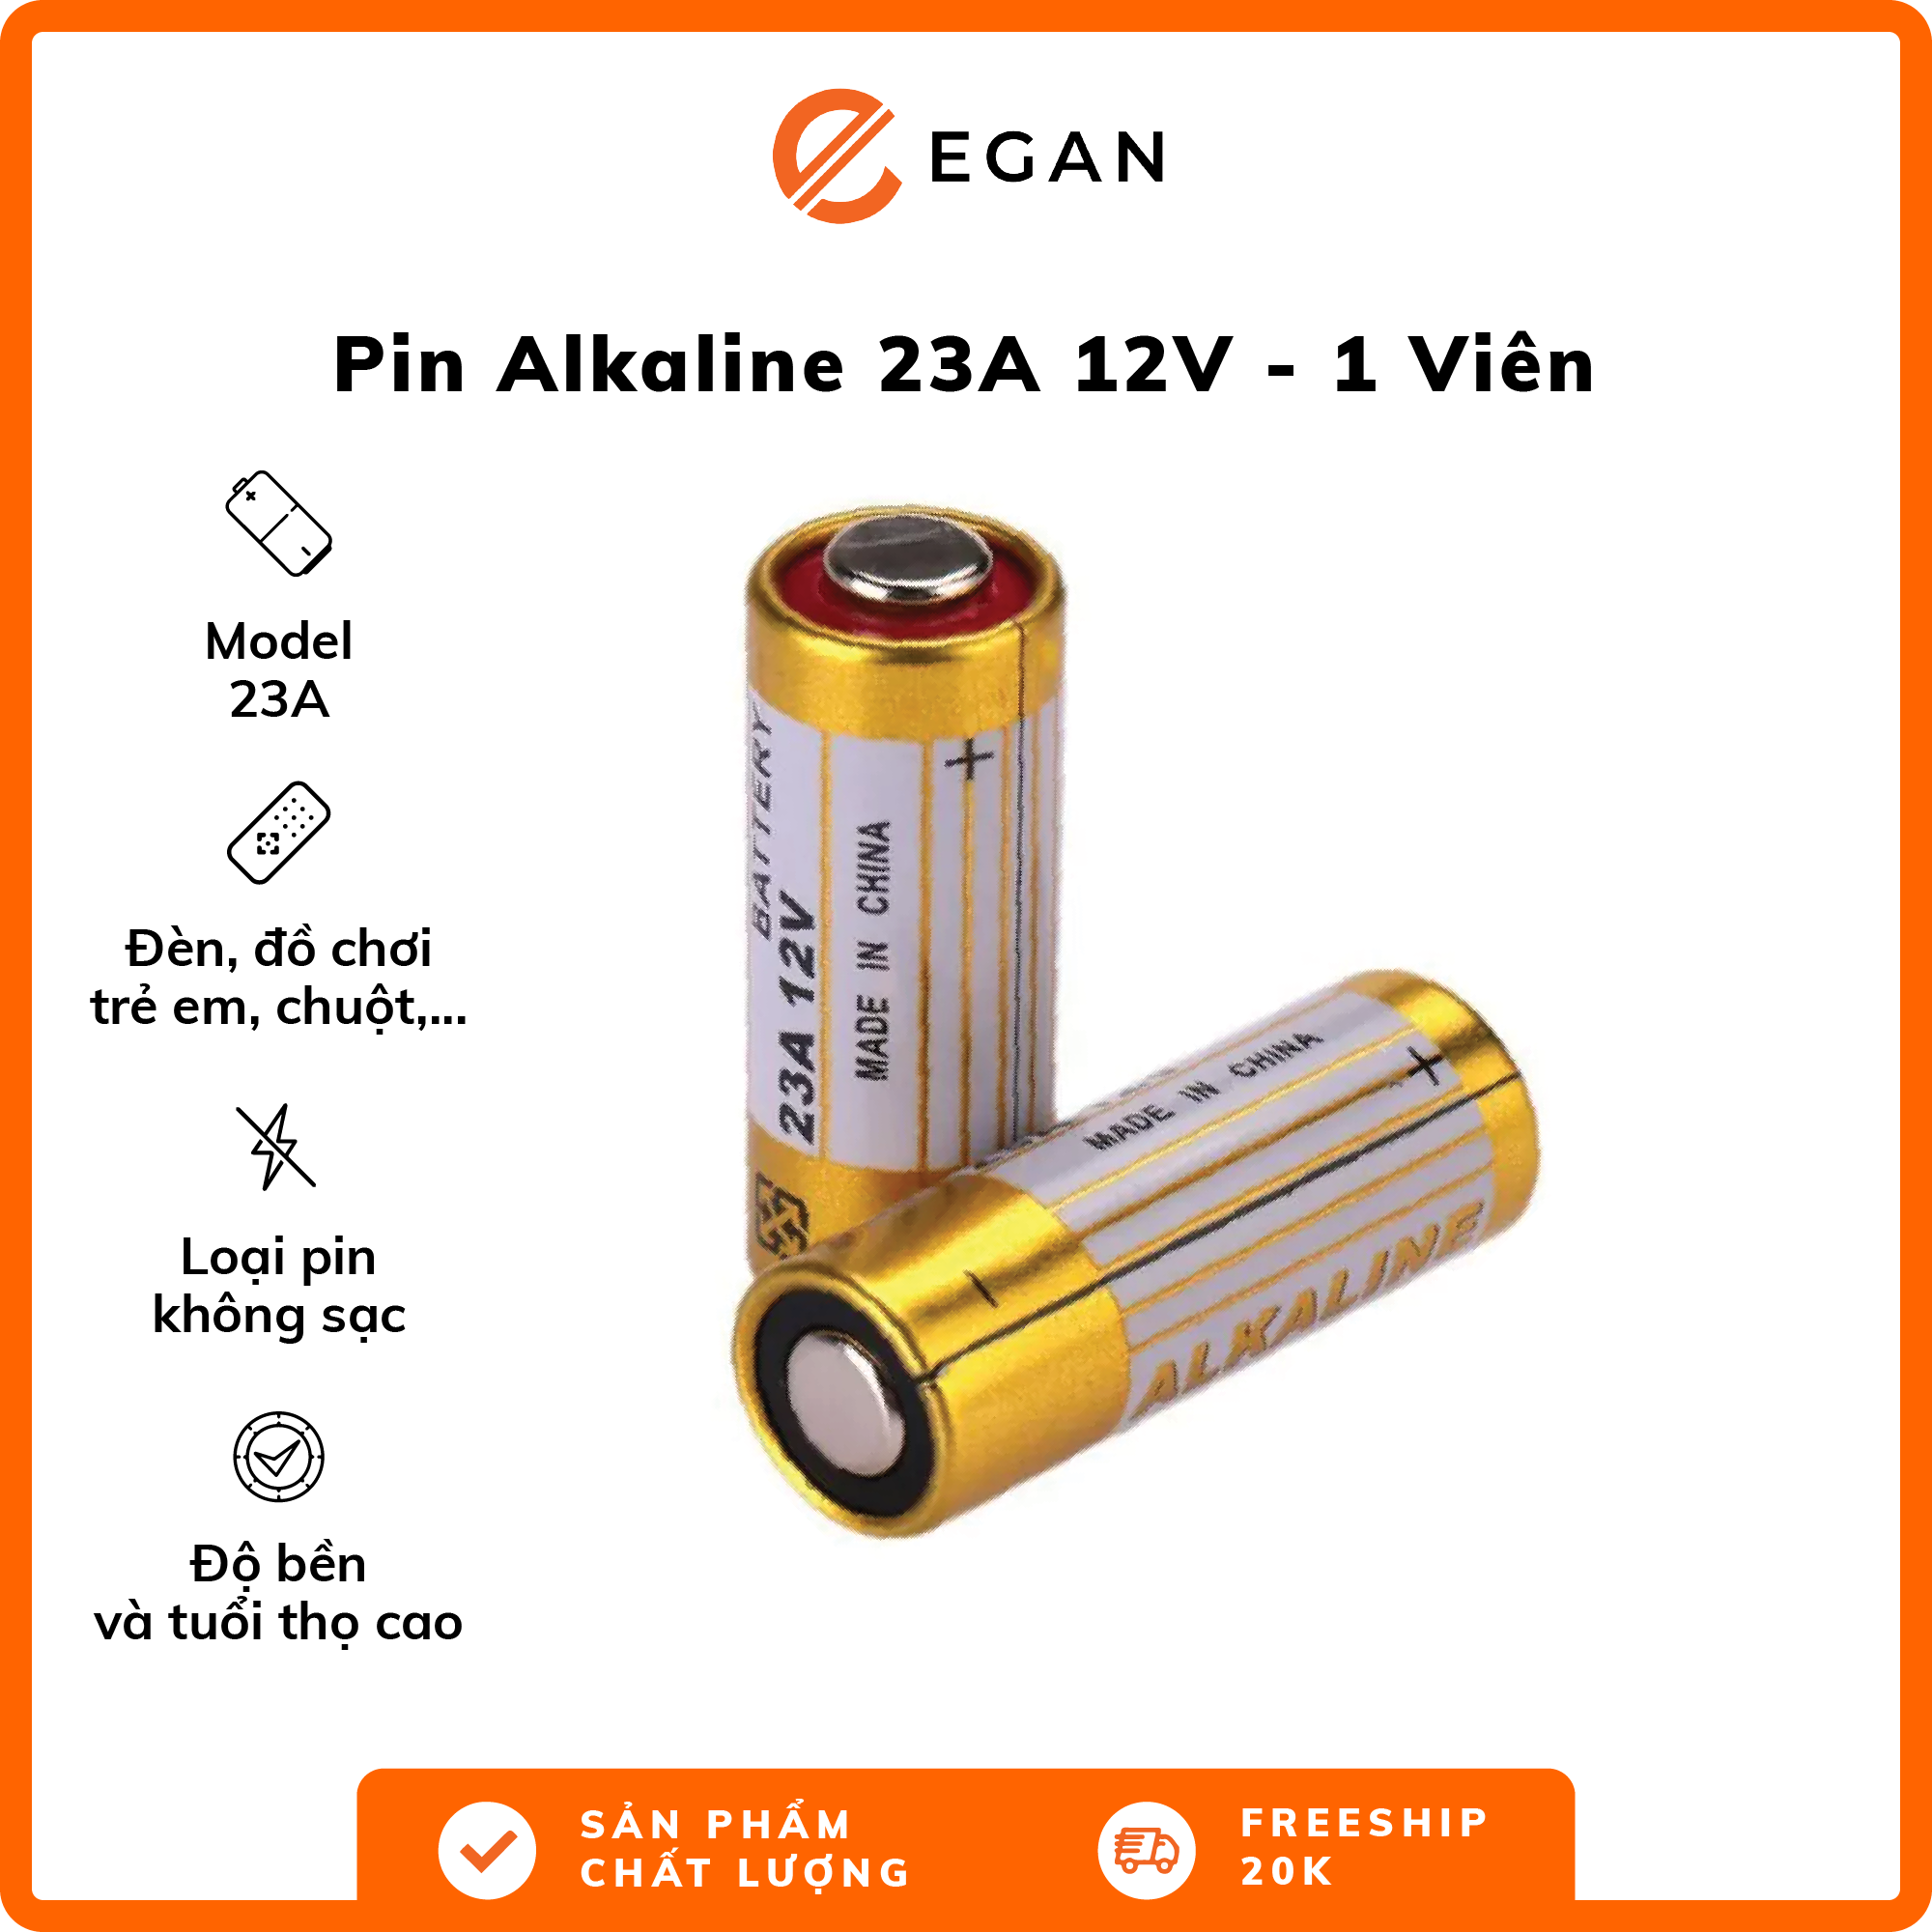 Pin Alkaline 23A 12V